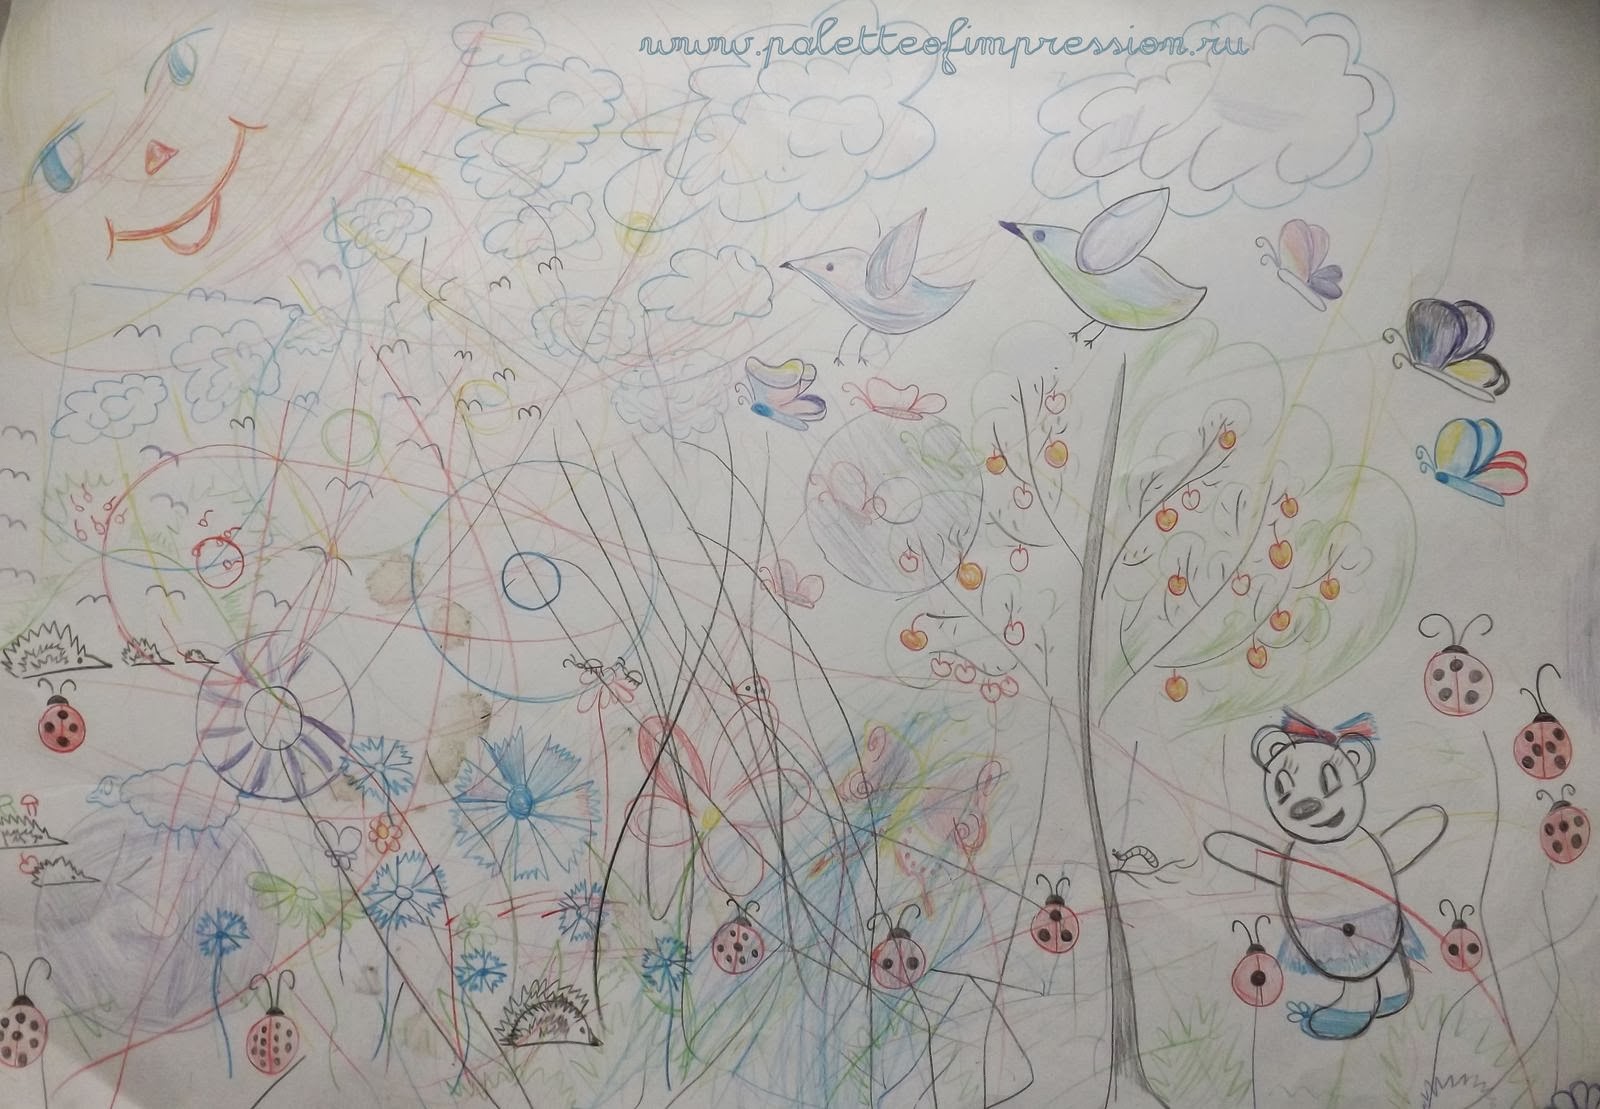 Детские рисунки карандашами, акварелью, на манной крупе. Детские каракули, черточки, точки. Блог Вся палитра впечатлений.